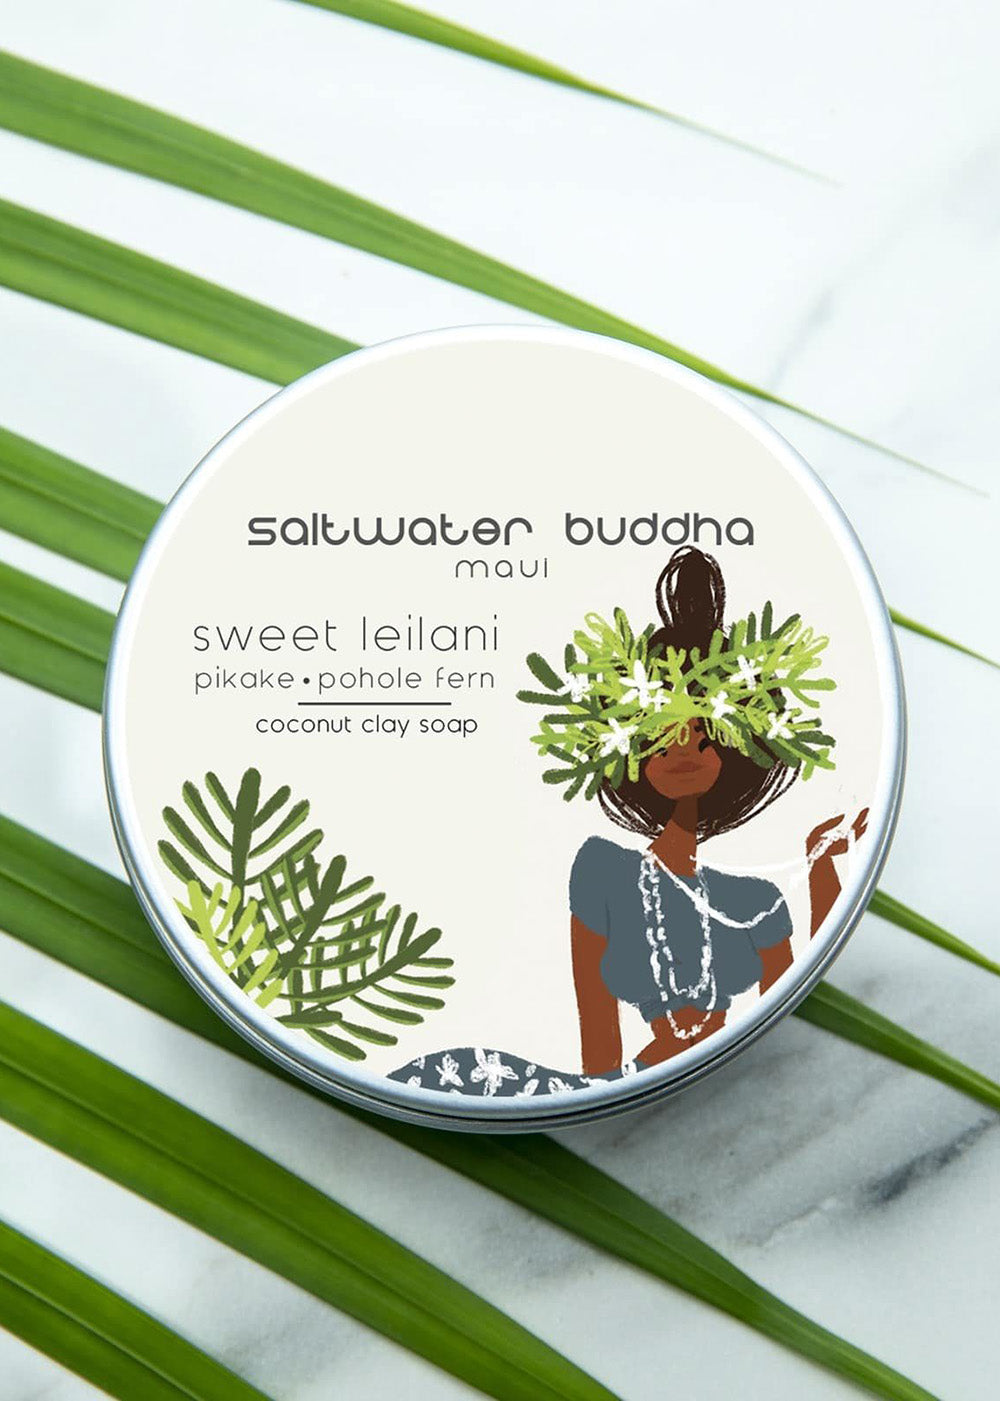 Saltwater Buddha Maui Soap |Sweet Lailani|